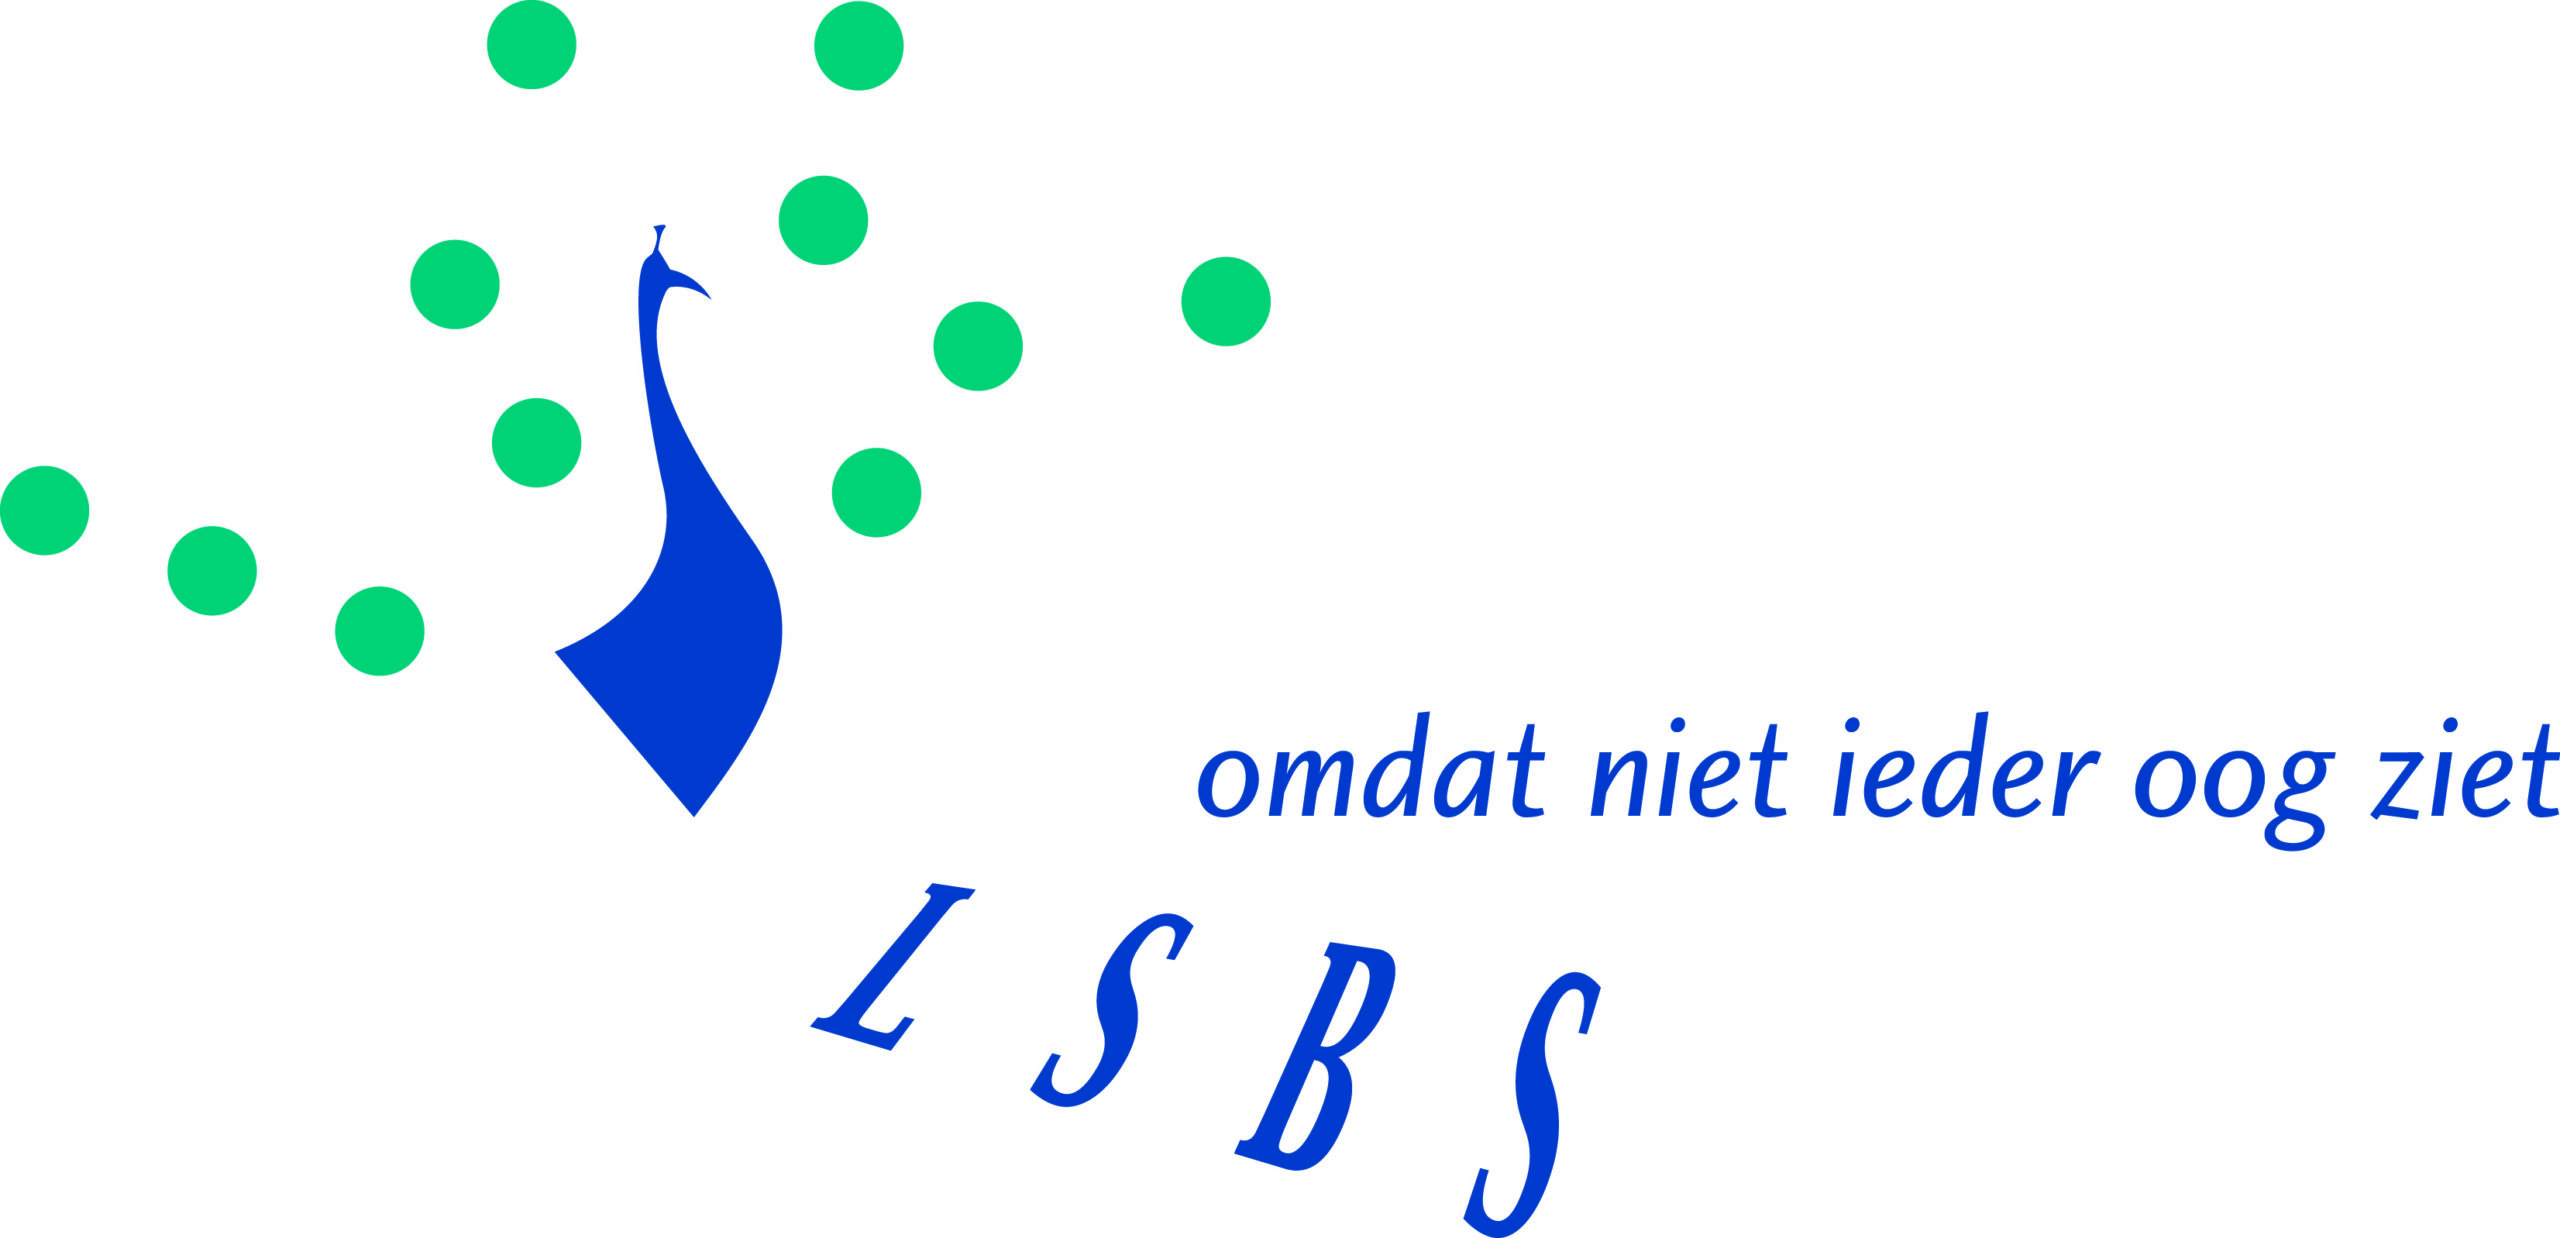 LSBS